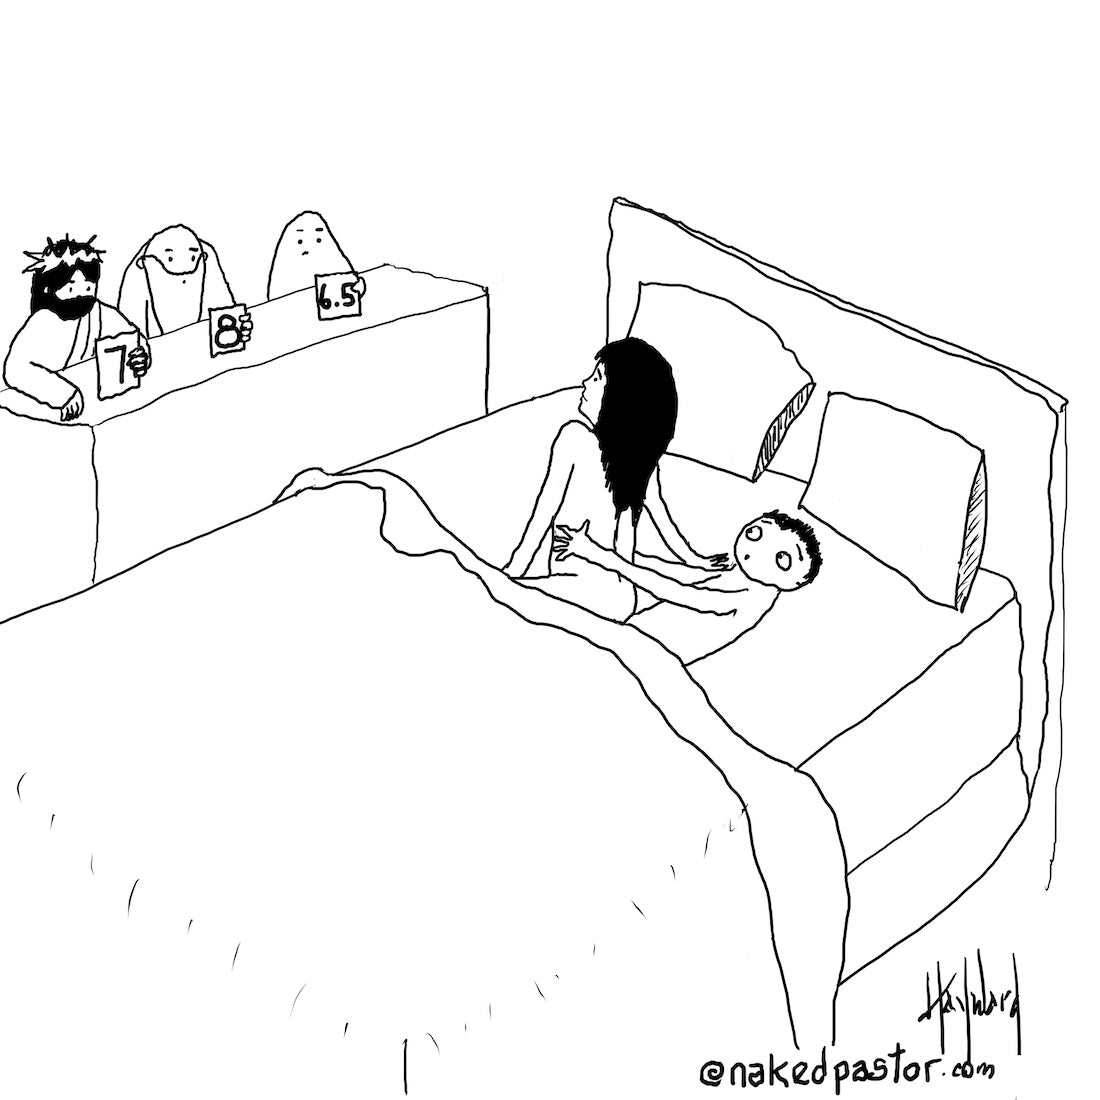 Score in the Bedroom Digital Cartoon